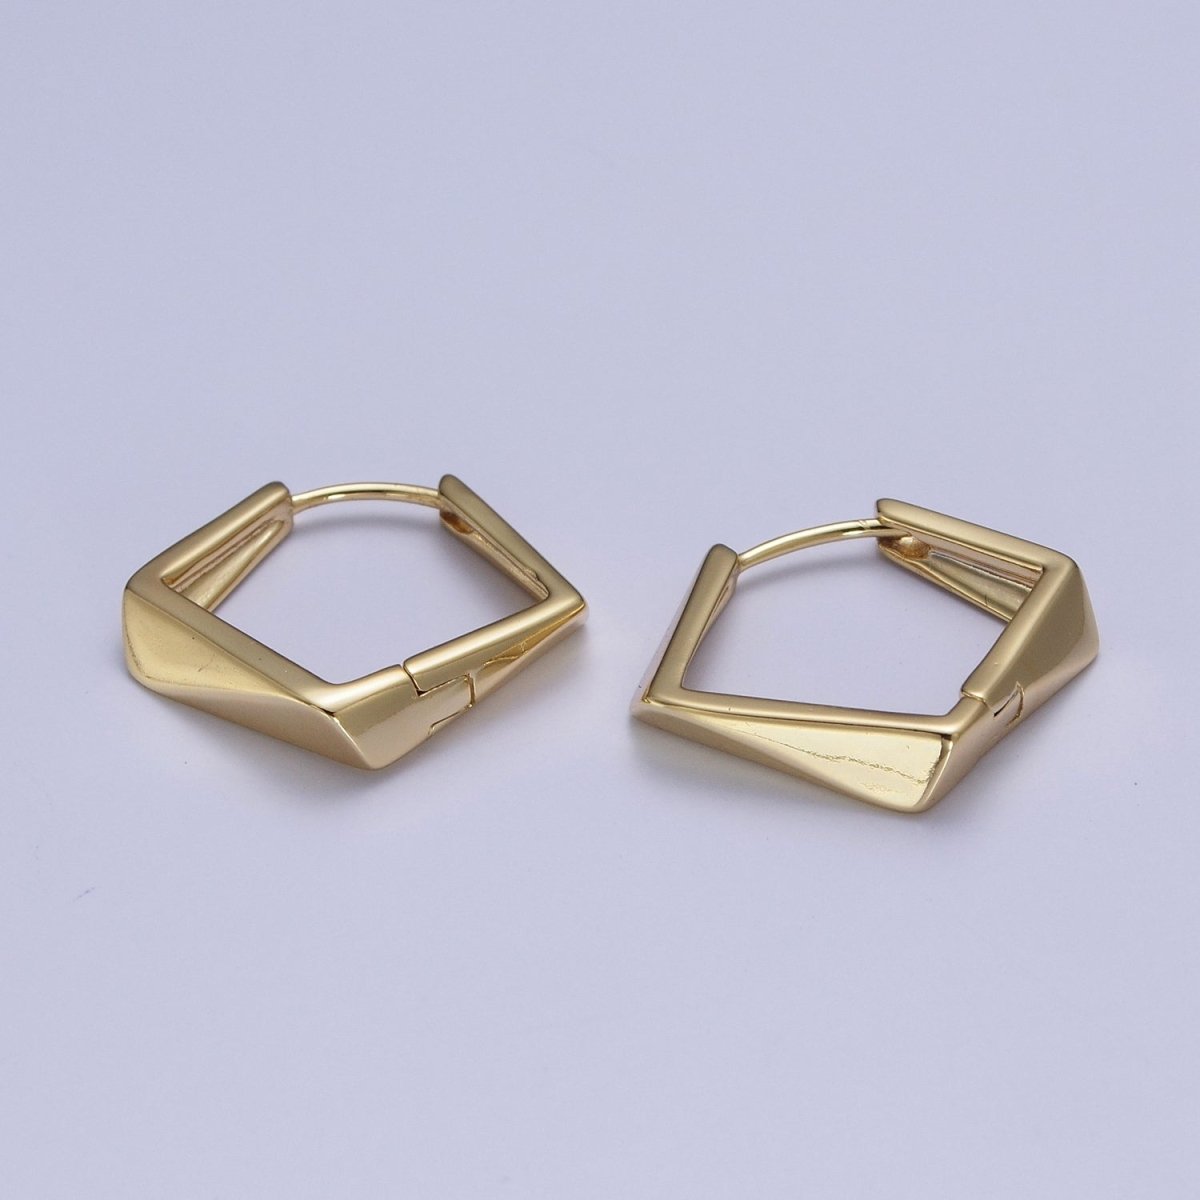 Gold Hoop Earrings, Geometric Hoop Earrings, Diamond Shaped Hoop Earrings, Statement Hoop Earrings Y-064 - DLUXCA